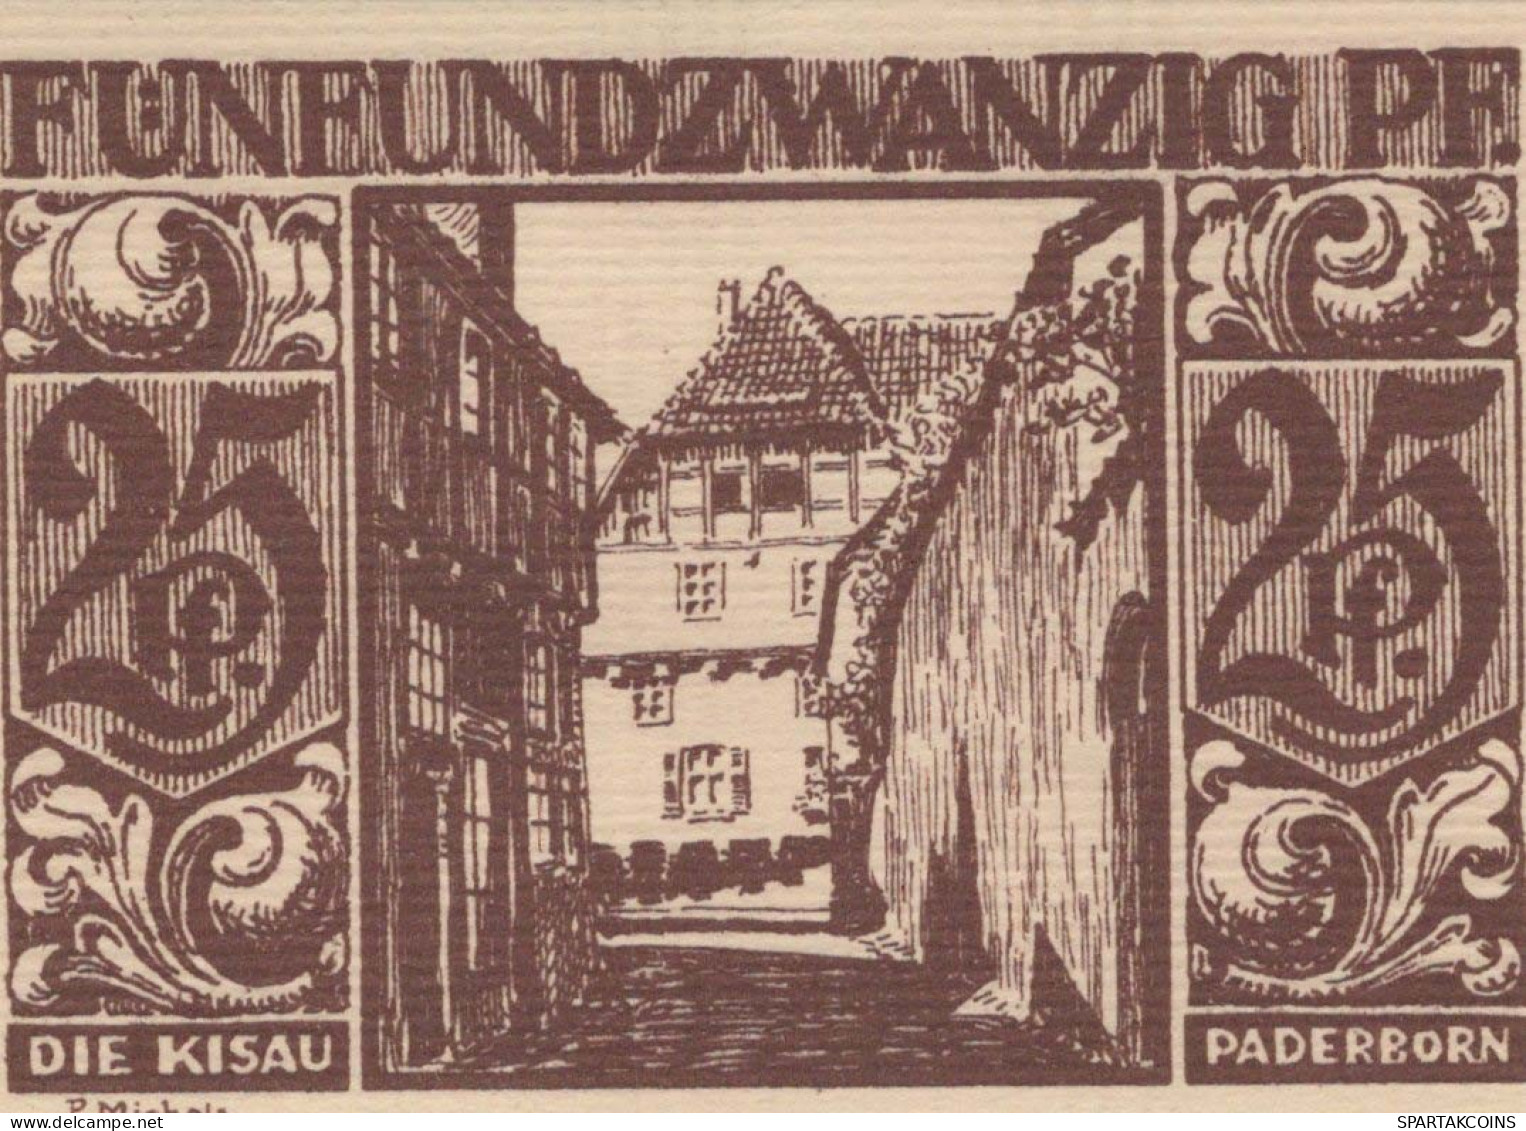 25 PFENNIG 1921 Stadt PADERBORN Westphalia DEUTSCHLAND Notgeld Banknote #PG193 - [11] Local Banknote Issues